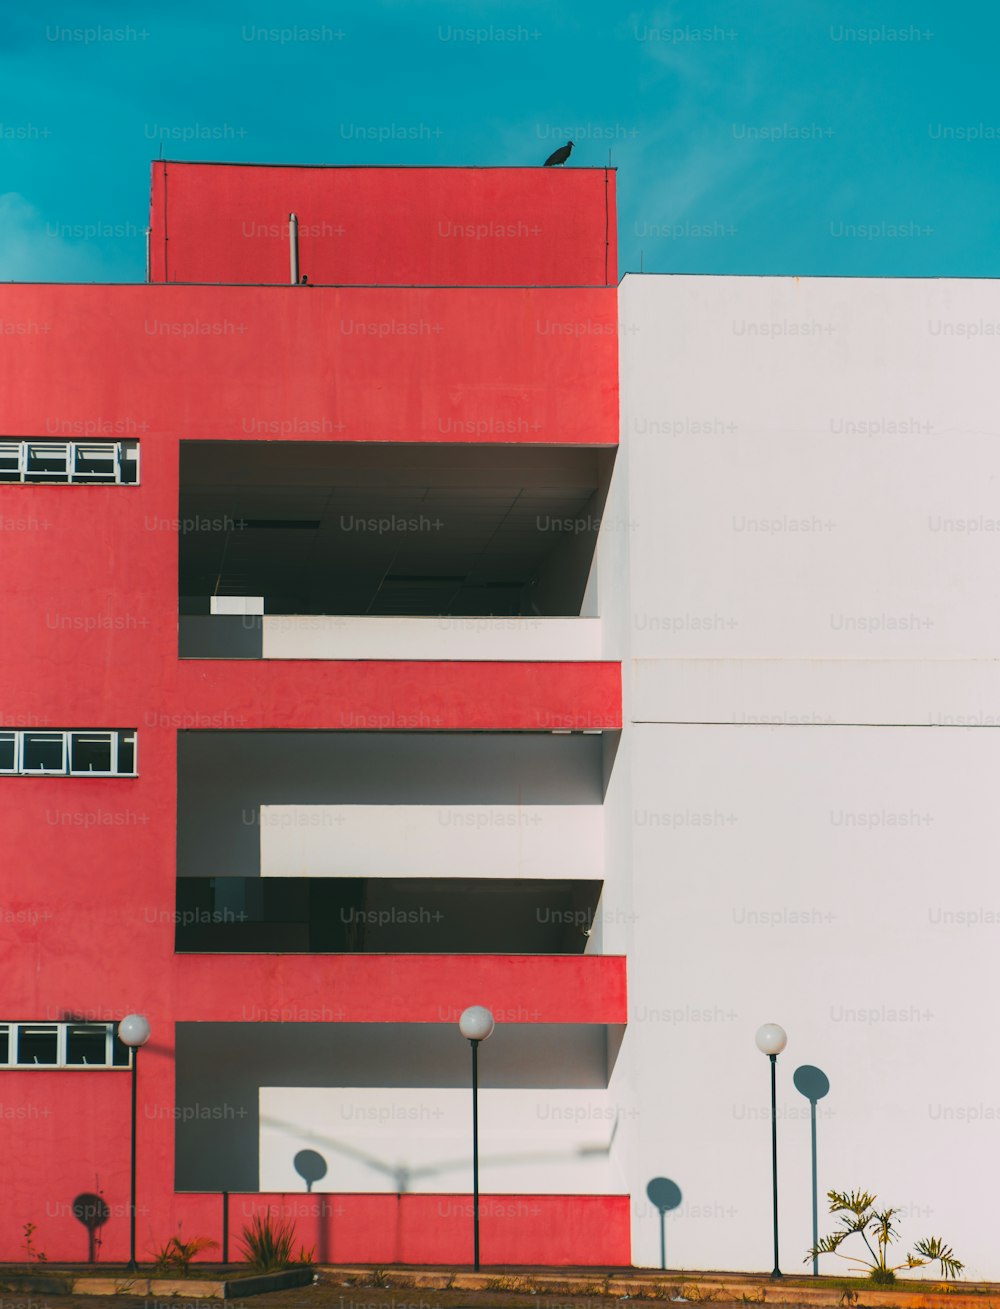 Die Fassade des modernen Gebäudes ist zweigeteilt: Ein Teil der Fassade ist rot und hat Balkone und Fenster, ein anderer Teil ist weiß; Laternen unten, ein riesiger Vogel auf dem Dach, minimalistische Geometrie